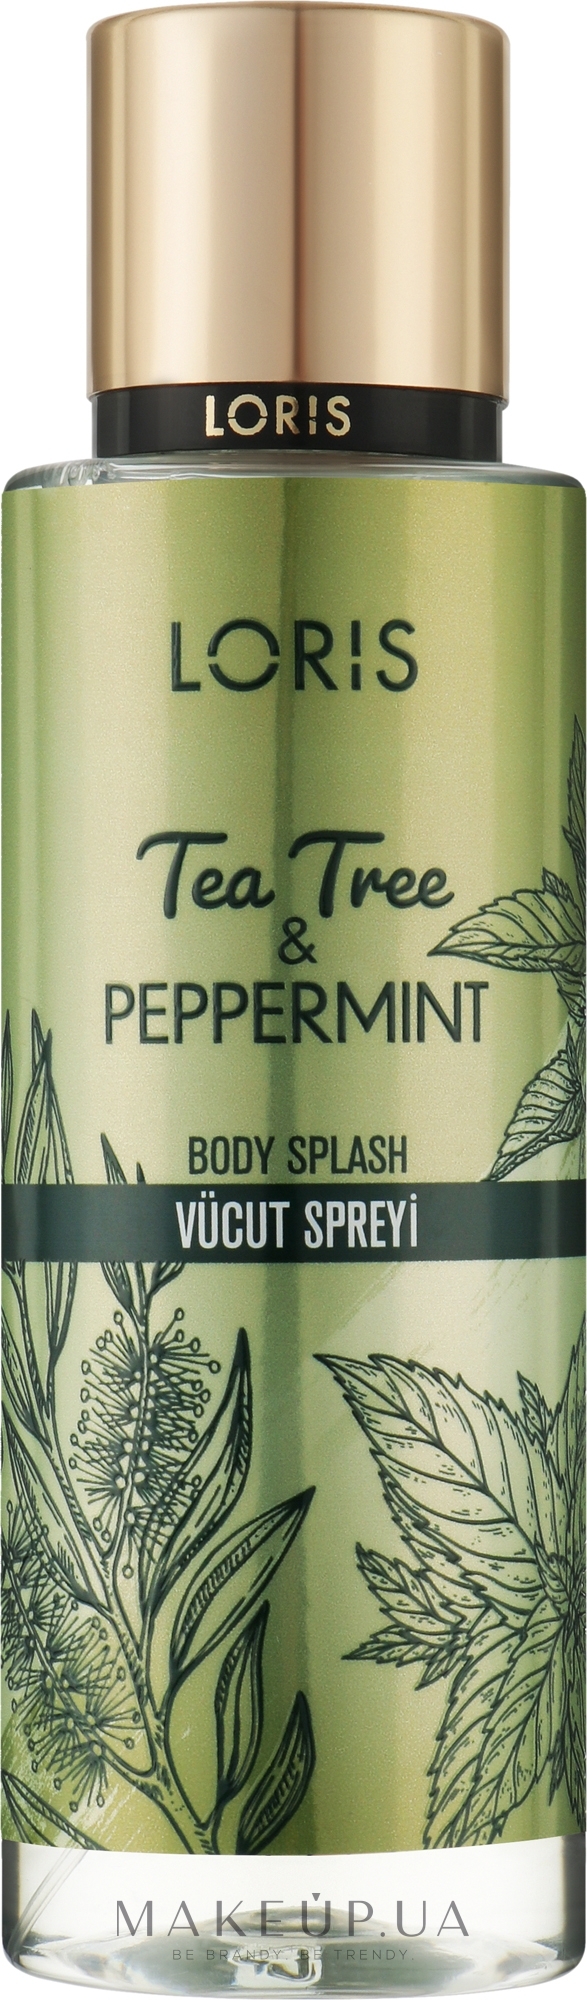 Міст для тіла - Loris Parfum Tea Tree & Peppermint Body Spray — фото 250ml